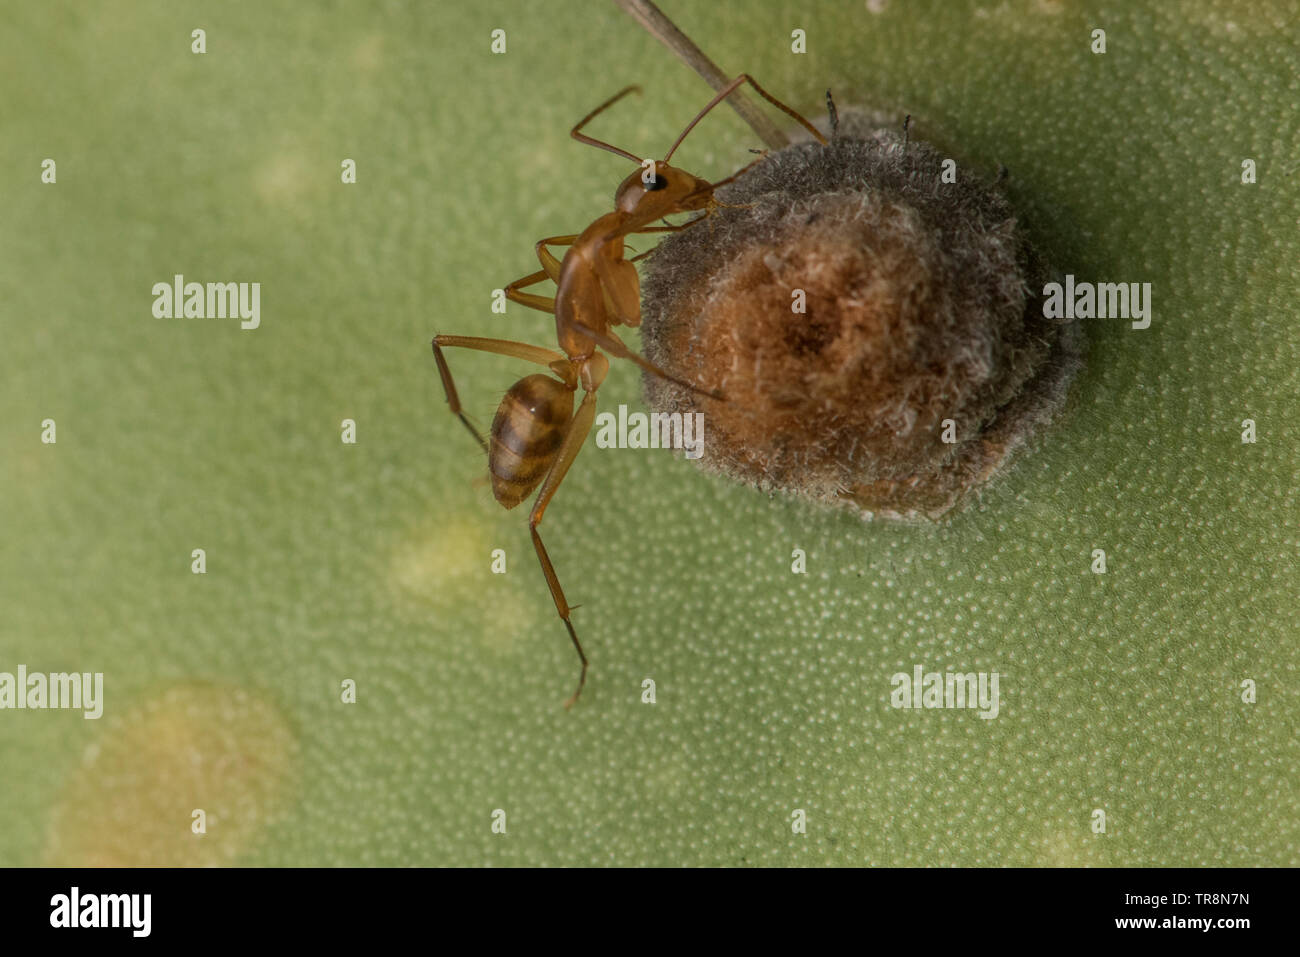 Camponotus conspicuus zonatus an ant introduced to the Galapagos islands, Ecuador. Stock Photo